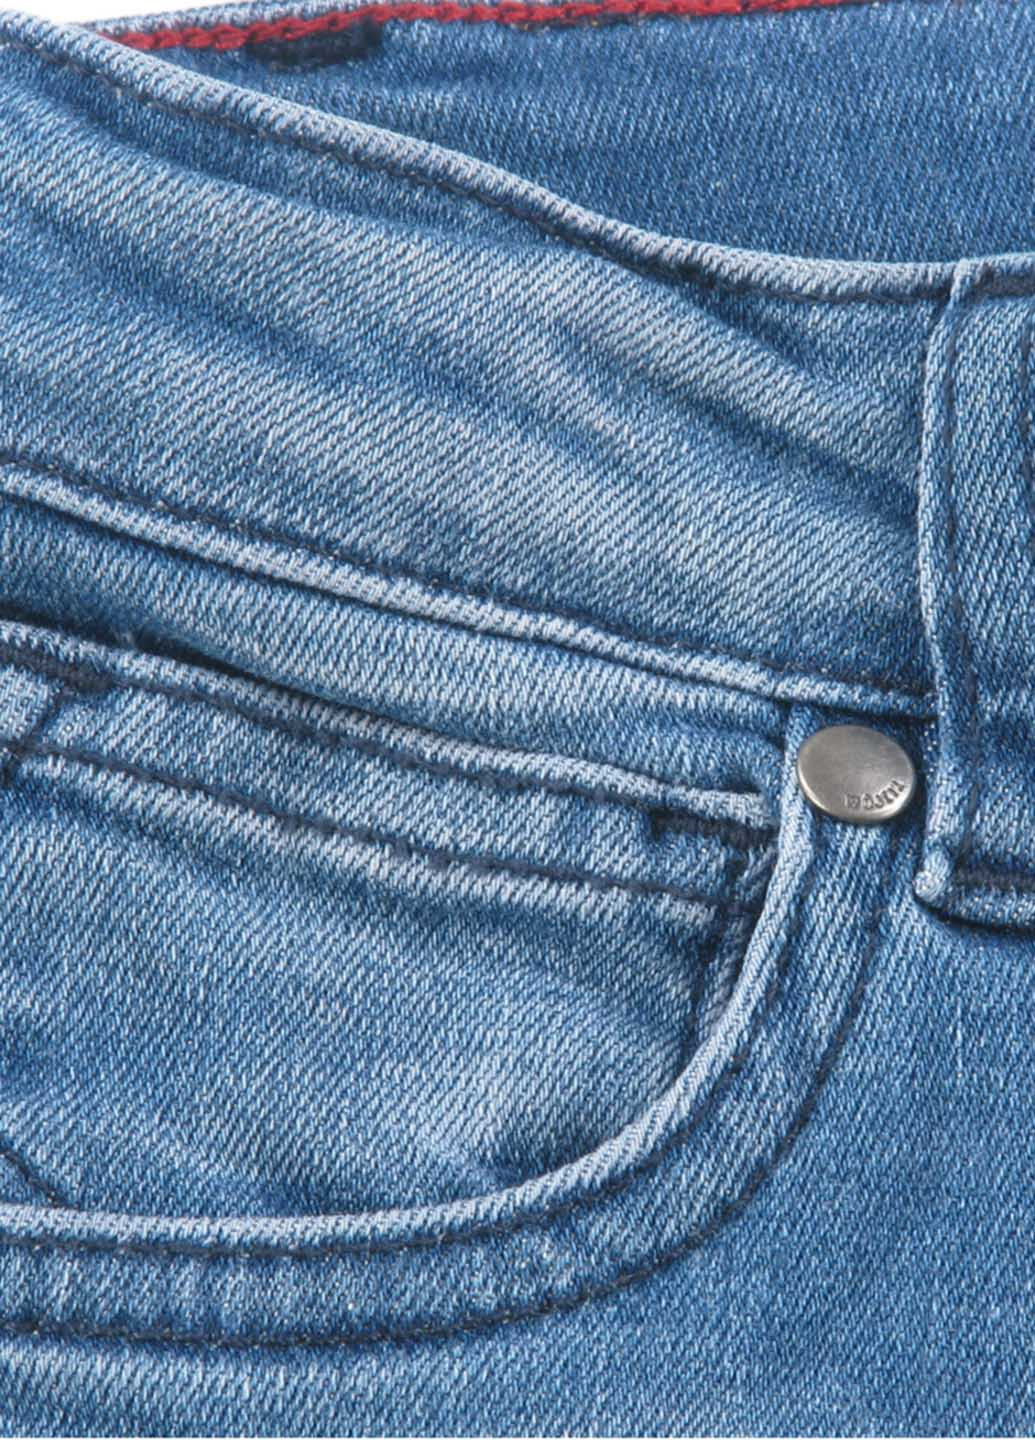 Голубые демисезонные прямые джинсы Wojcik